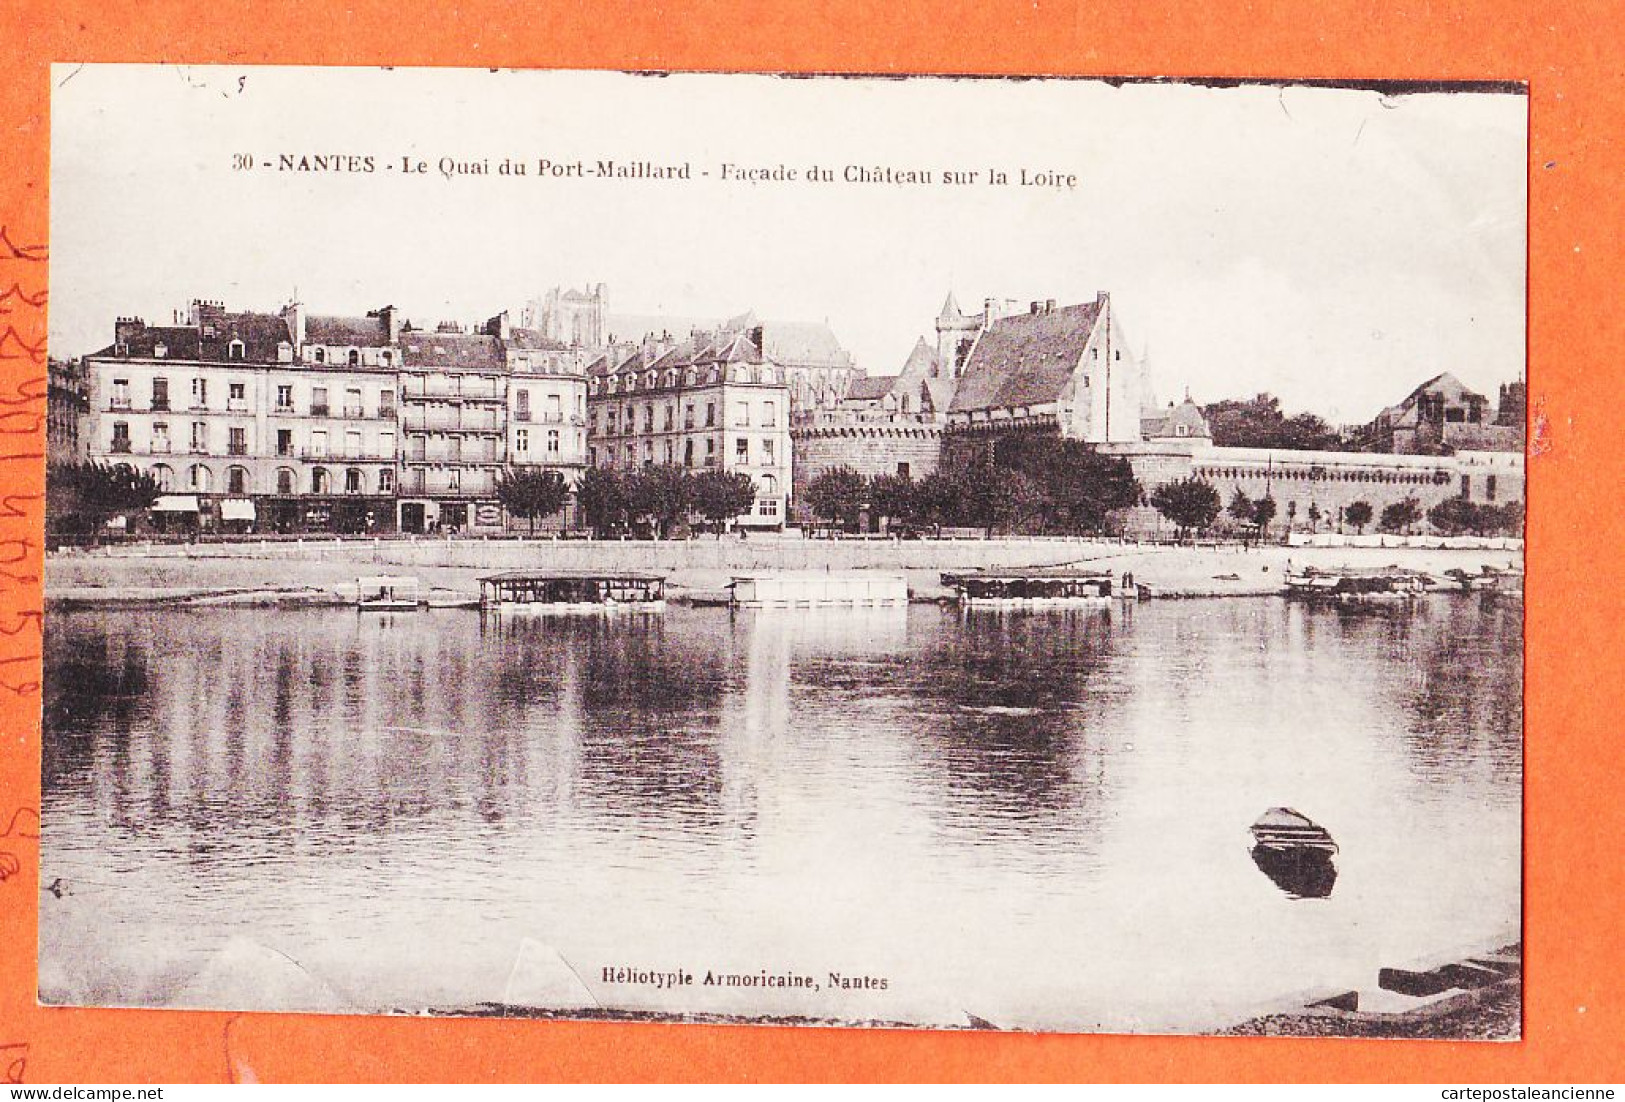 09918 / ⭐ NANTES 44-Loire Atlantique ◉ Quai PORT-MAILLARD Facade Chateau Sur LOIRE 1910s ◉ Heliotypie Armoricaine 30 - Nantes